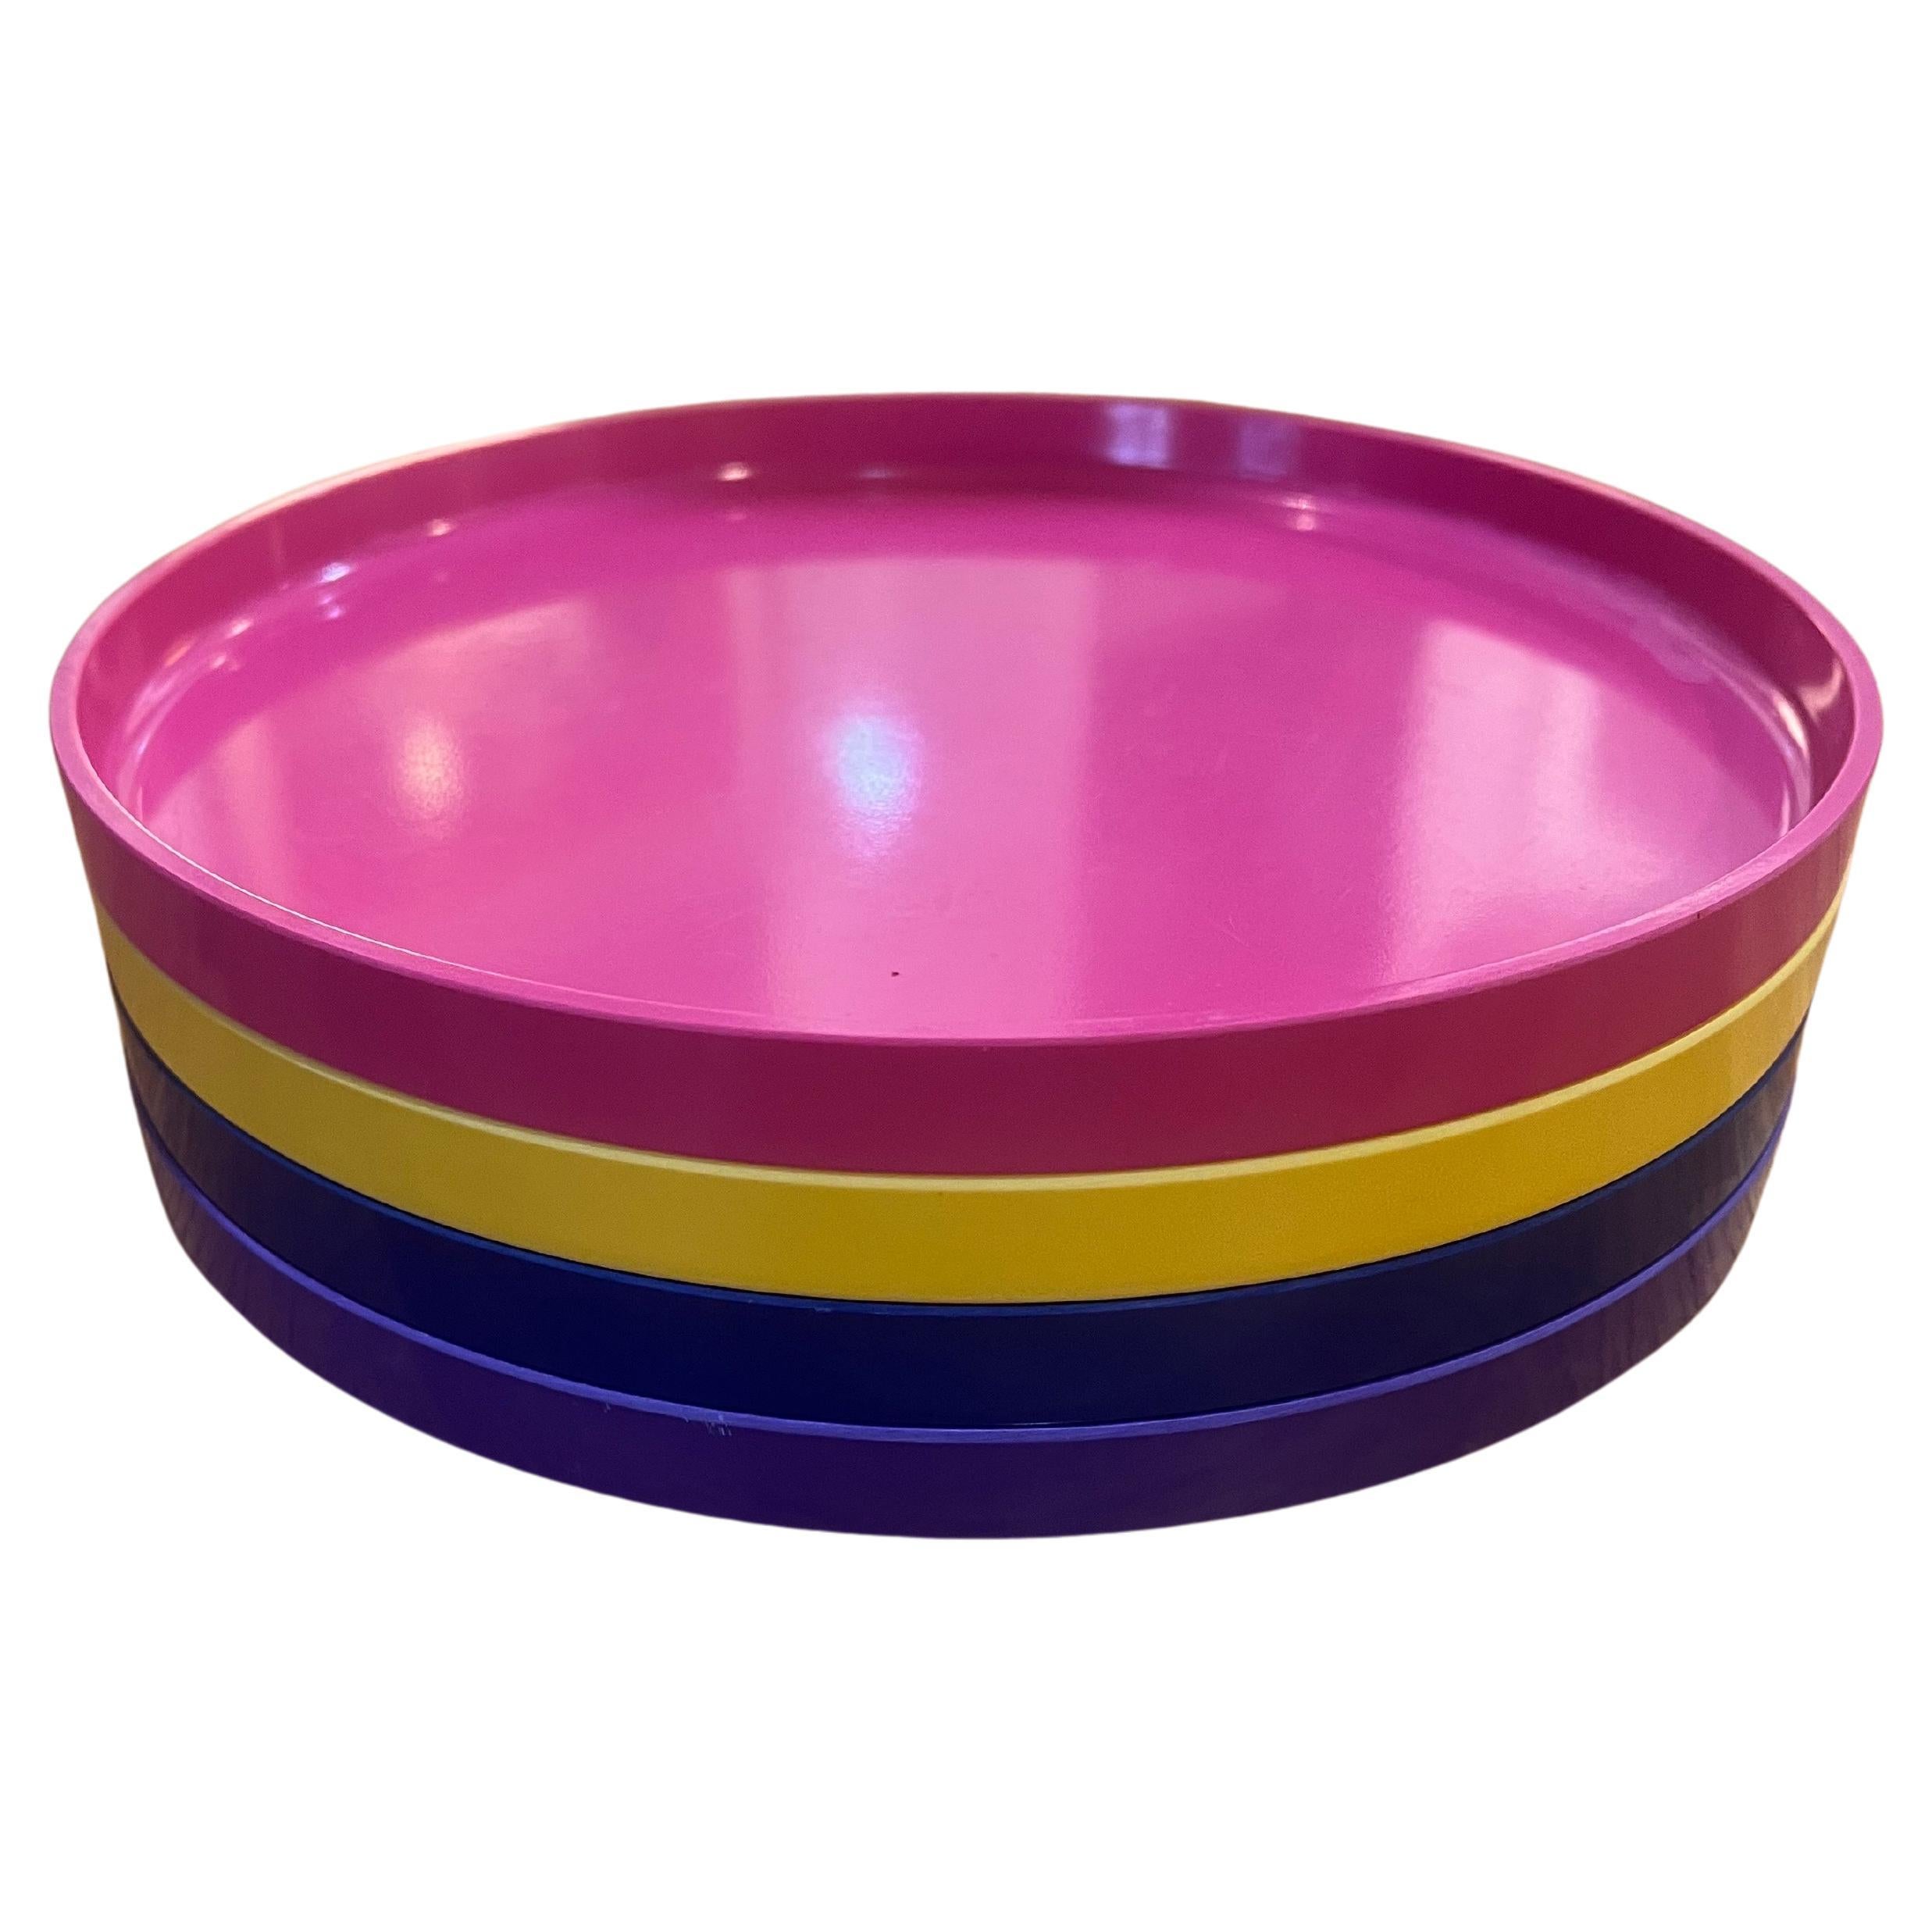 Ensemble coloré de 4 assiettes conçues par Massimo Vignelli pour Heller vers les années 1970, dans une couleur bleu marine, jaune, rose et violet.